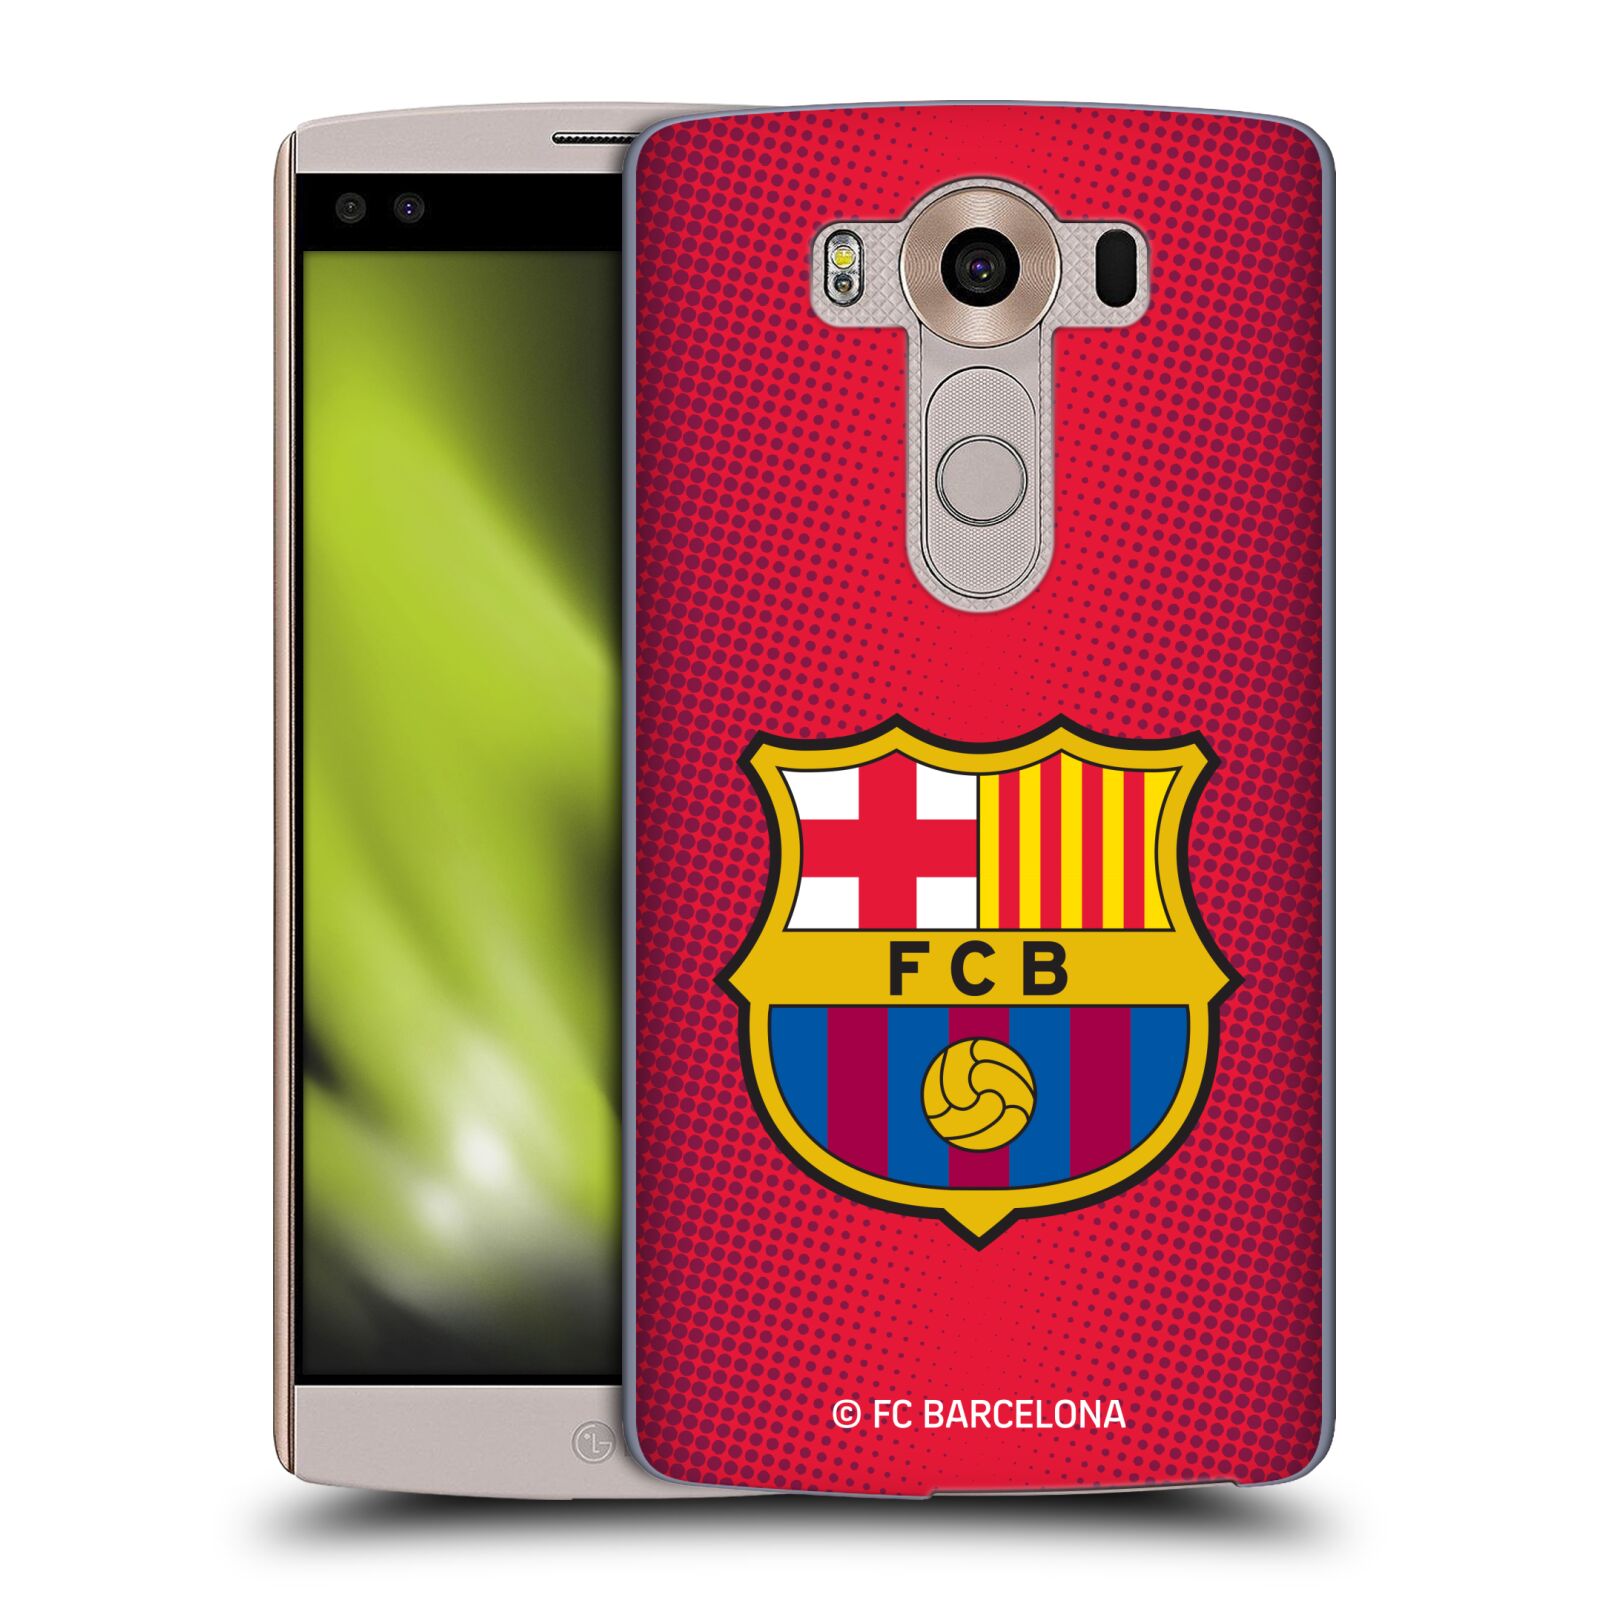 Obal na mobil LG V10 - HEAD CASE - FC BARCELONA - Velký znak červená a modrá